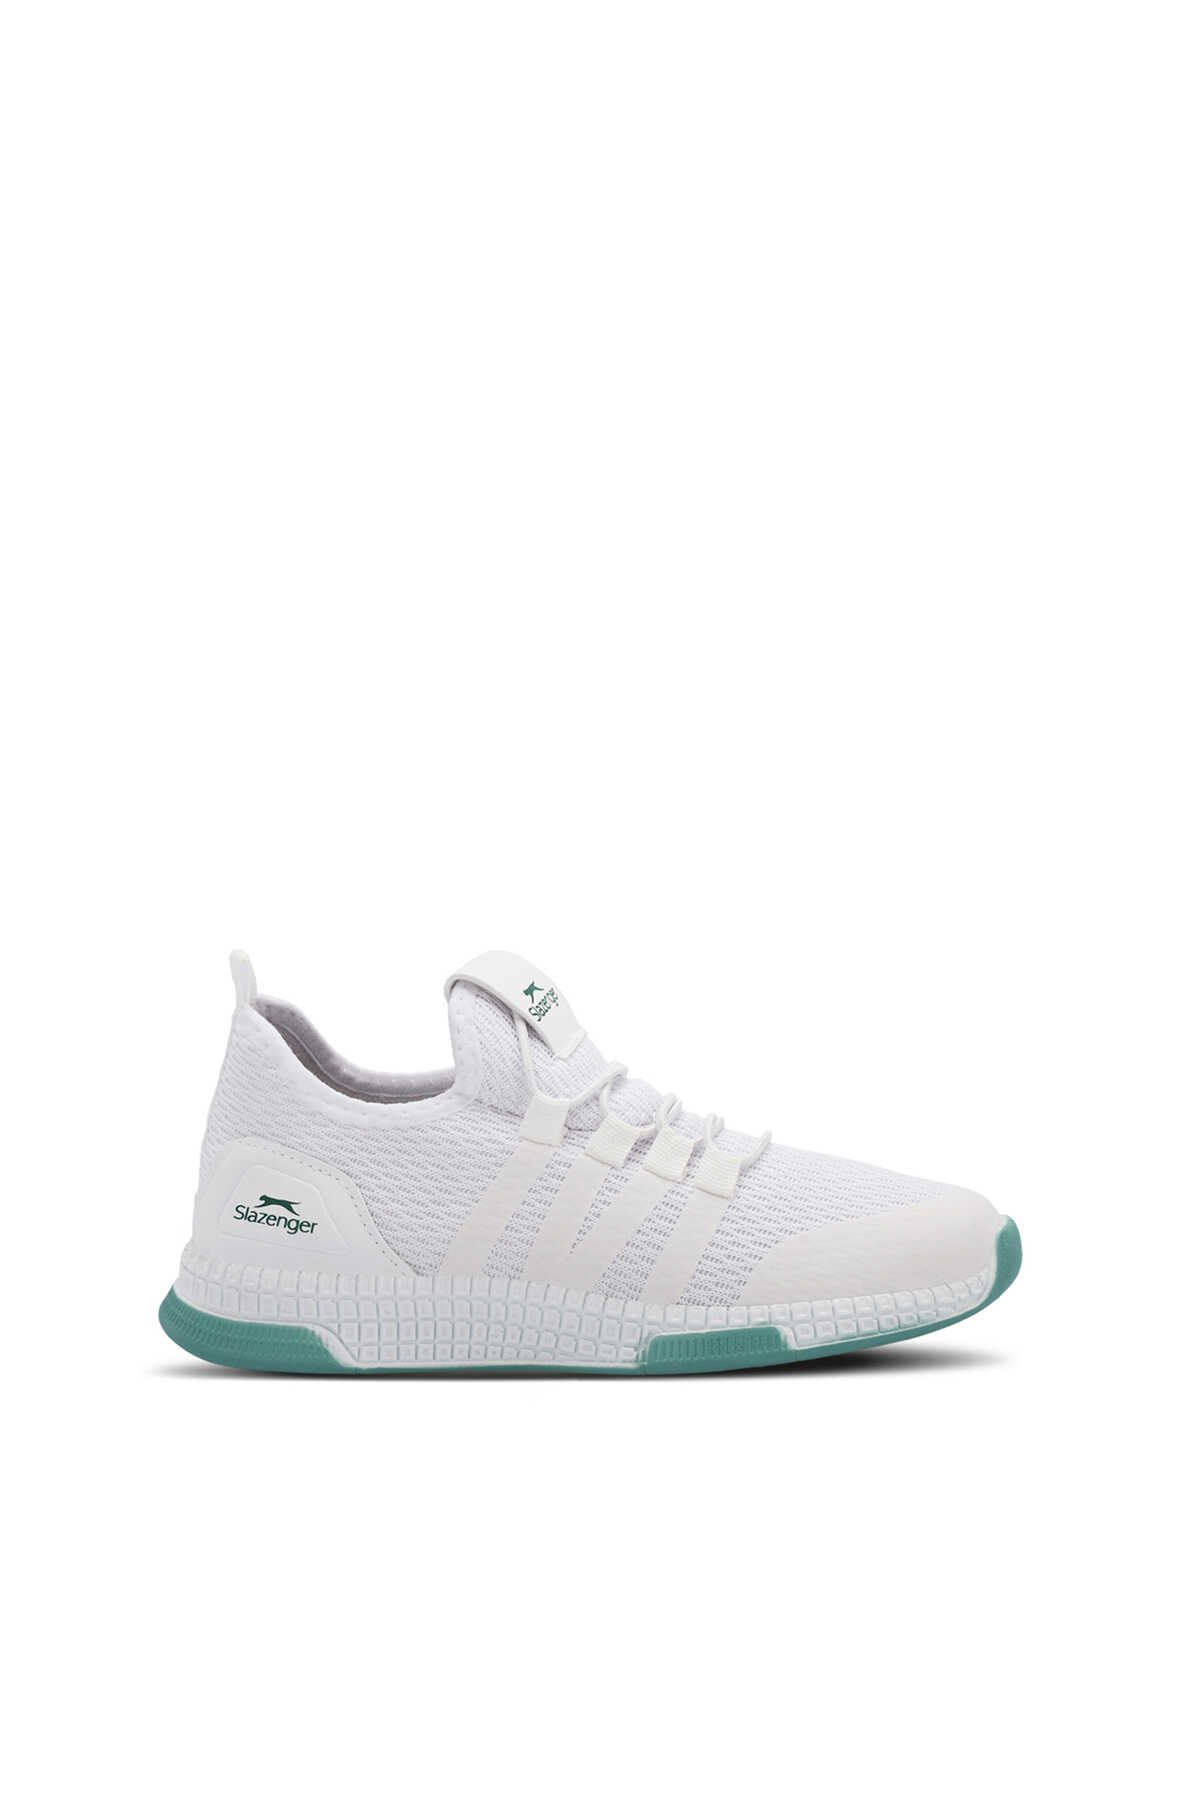 Slazenger - EBBA I Sneaker Erkek Çocuk Ayakkabı Beyaz / Yeşil